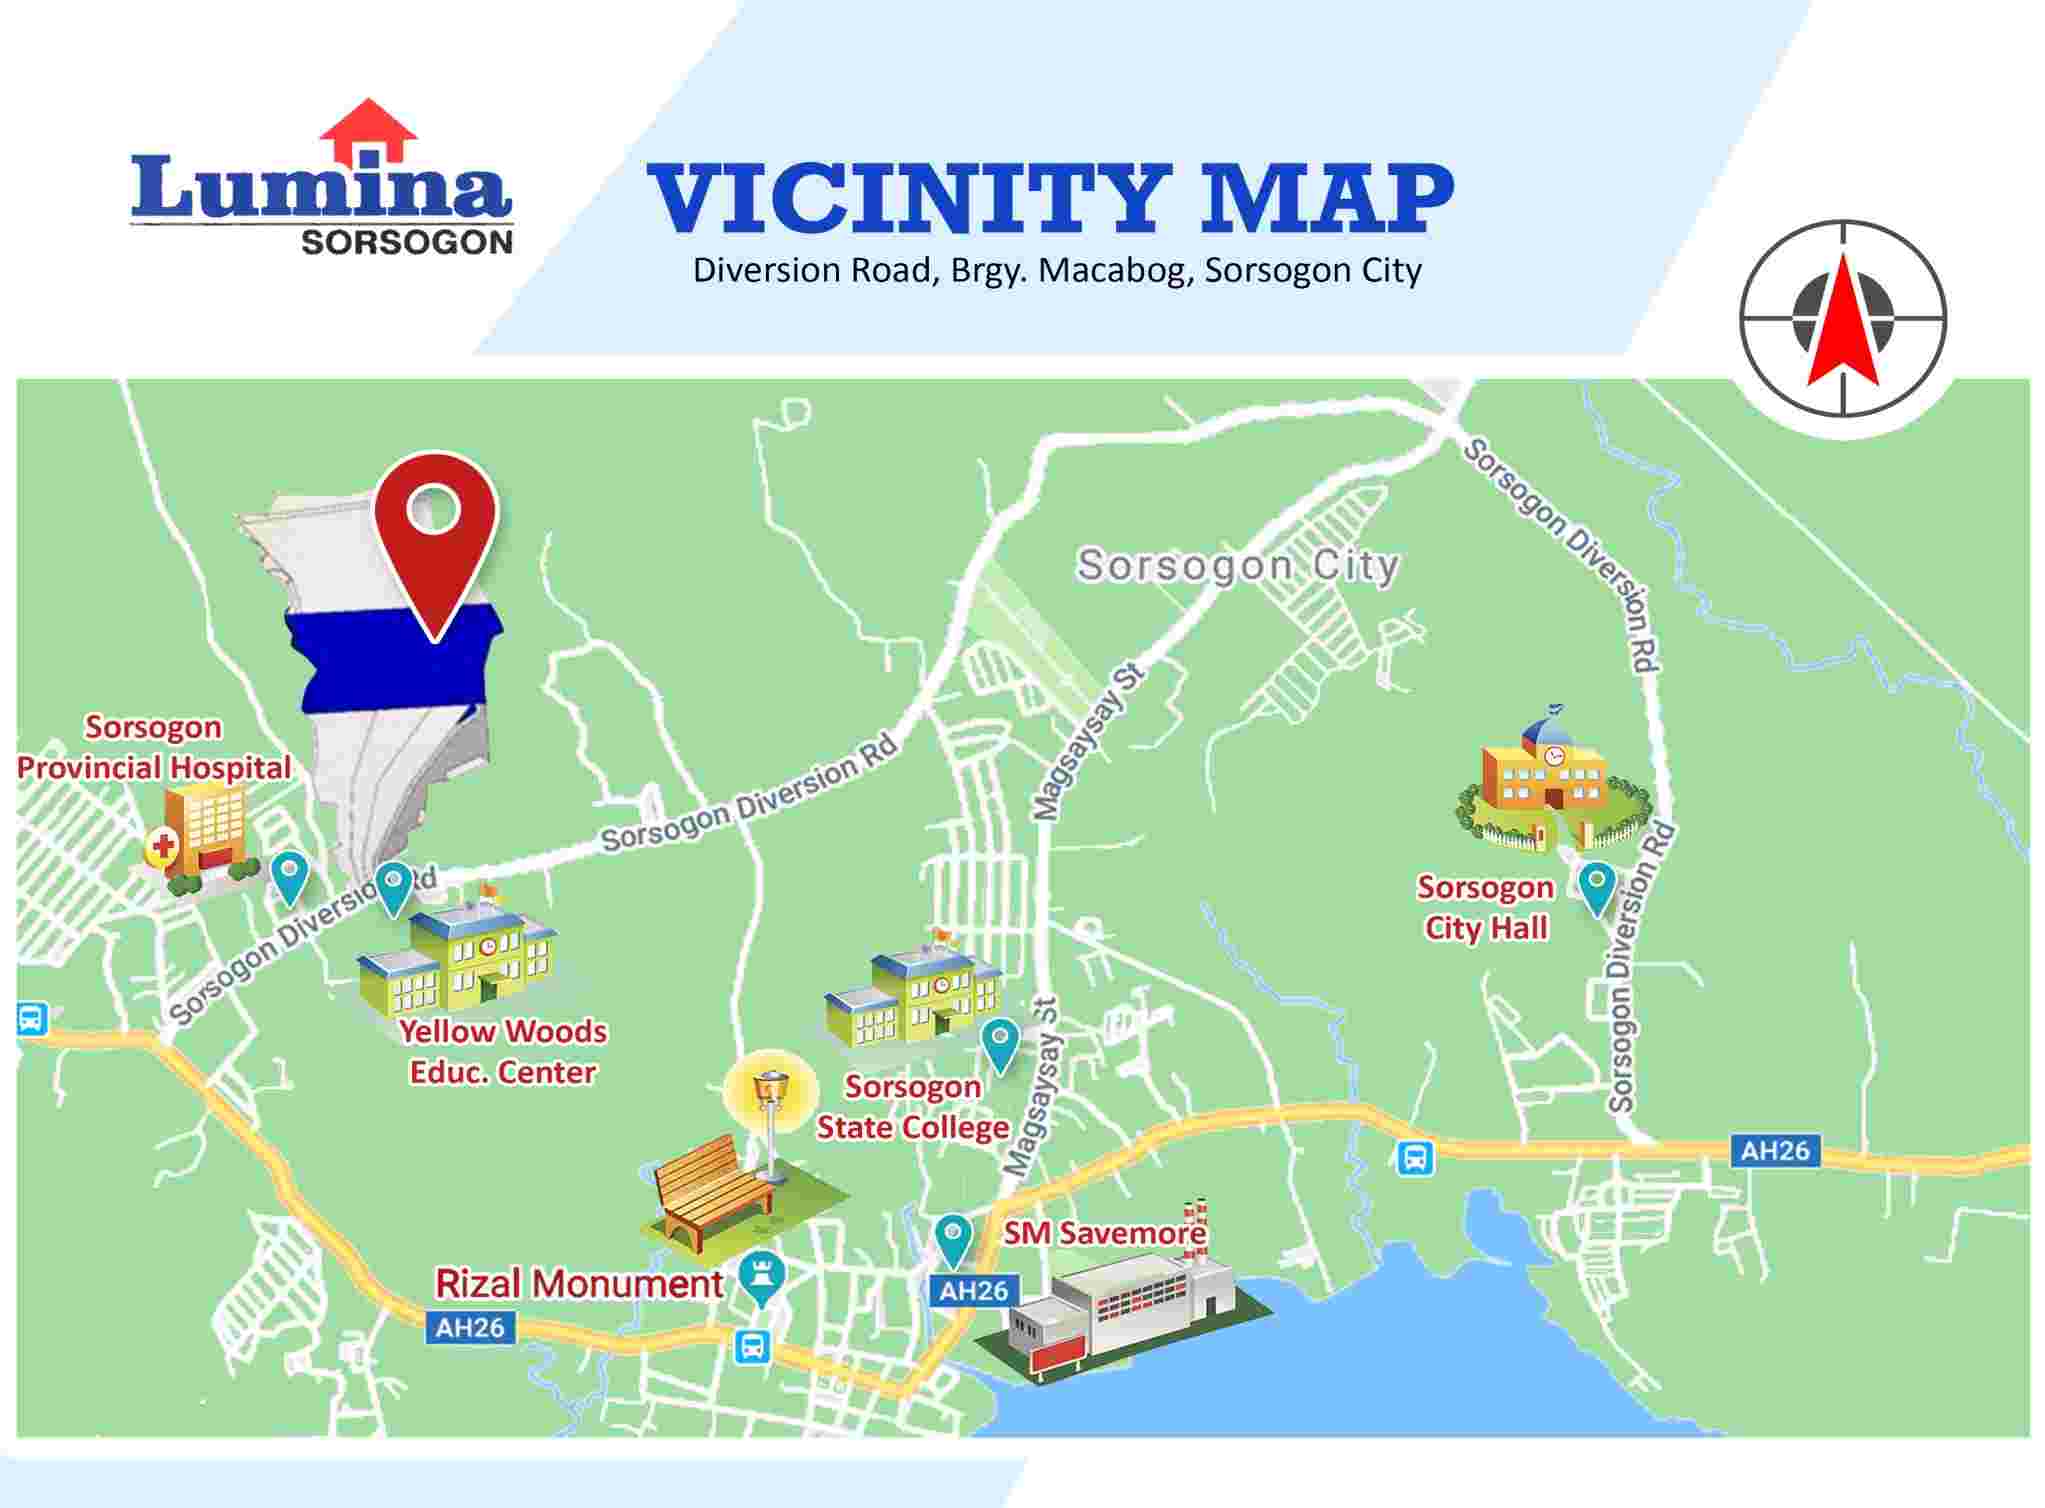 Vicinity-Map-1636424086.jpeg